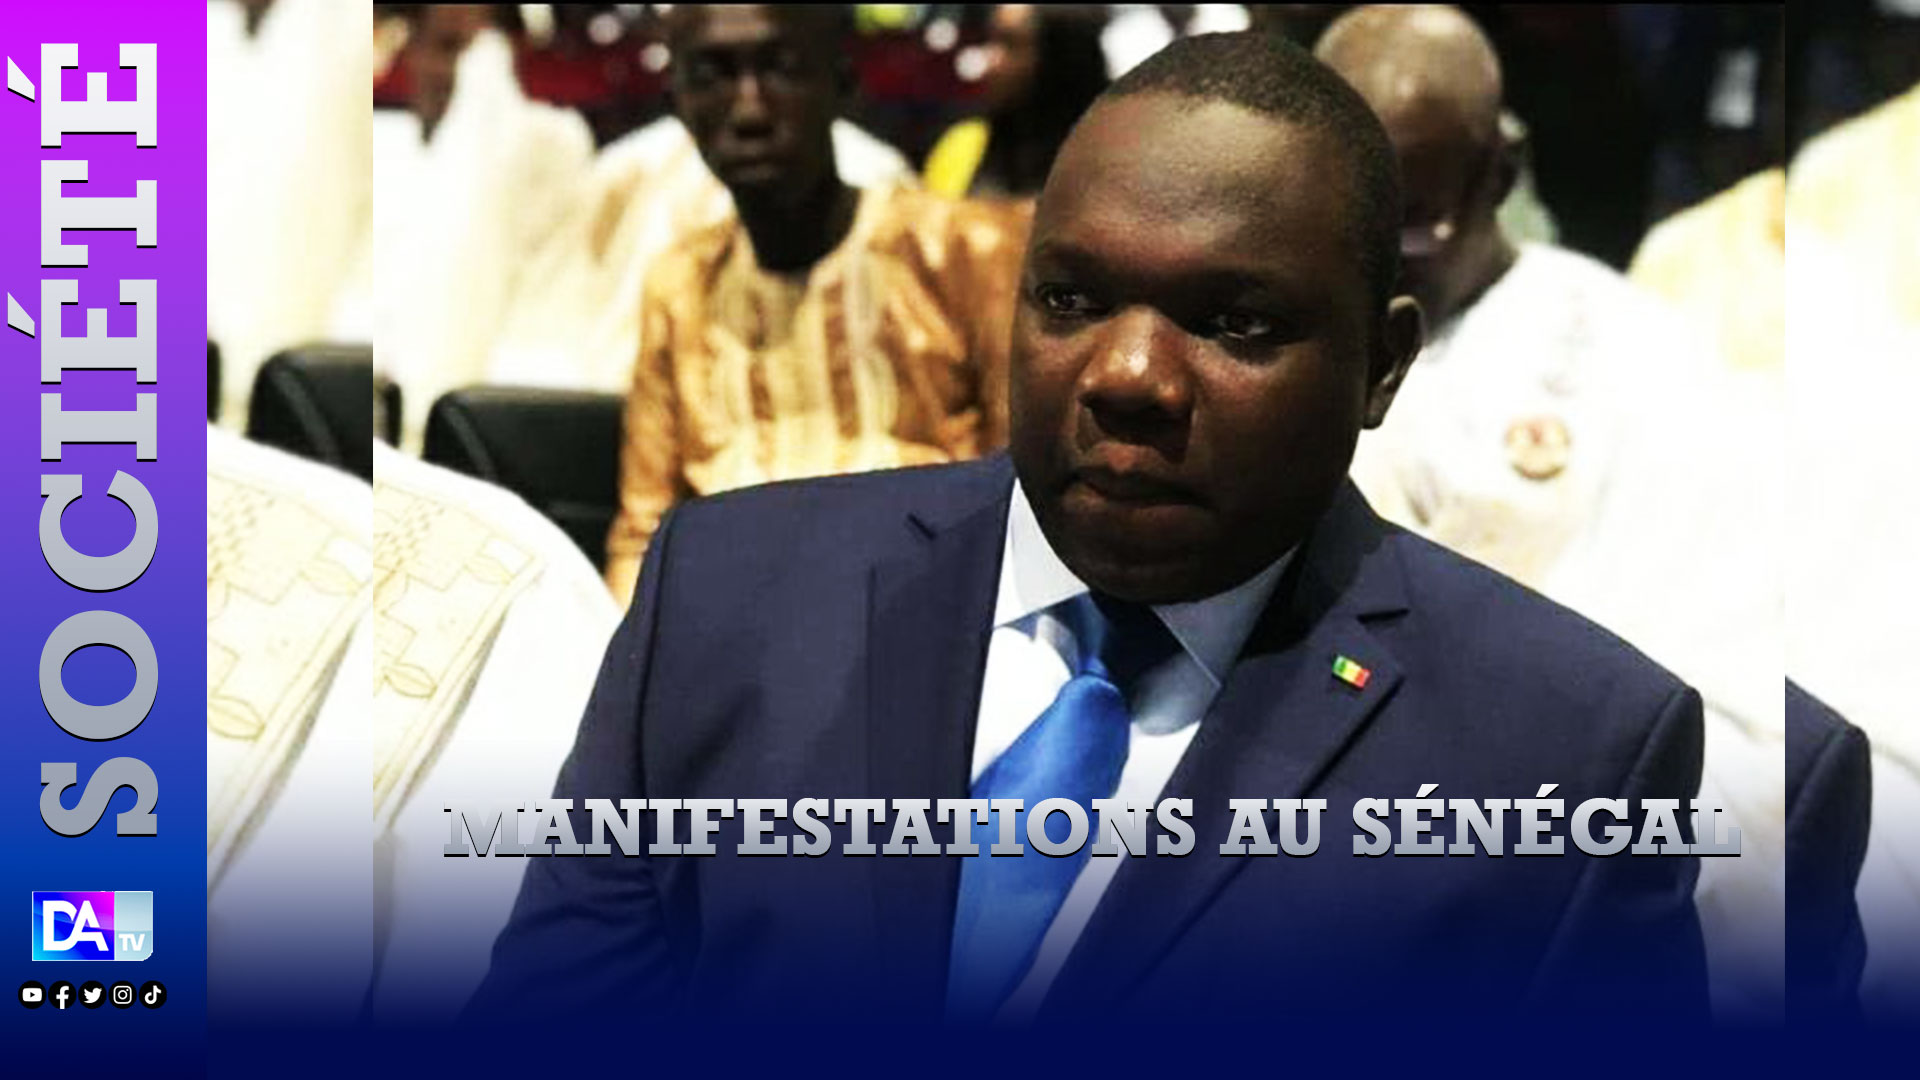 Manifestations au Sénégal - El Hadj Dia dénonce l’absence aux côtés du Président Sall de certains leaders et cite nommément Doudou Kâ dont il demande le limogeage